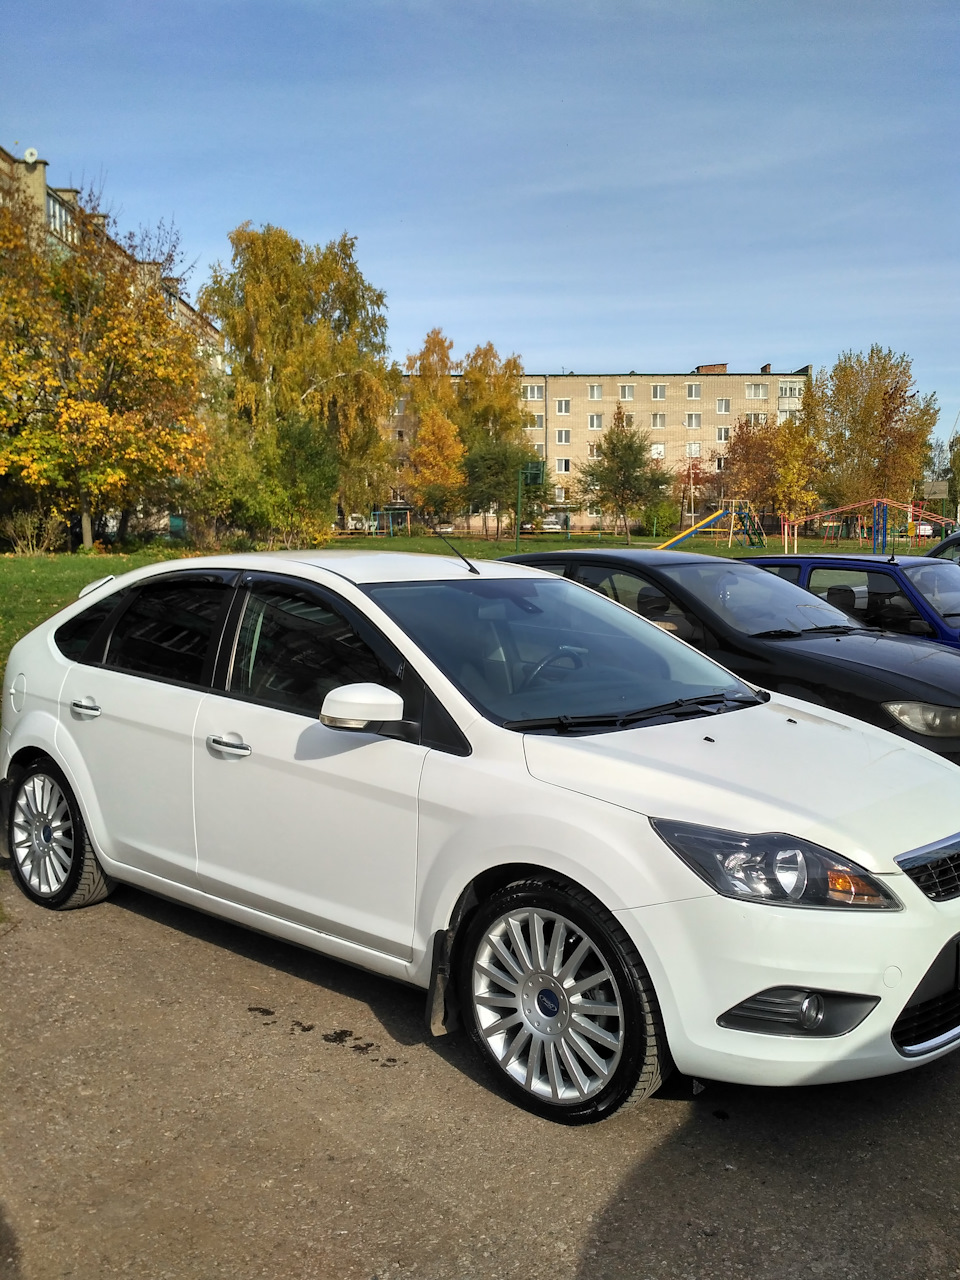 Ford Mondeo 2013 - povozcar.ru